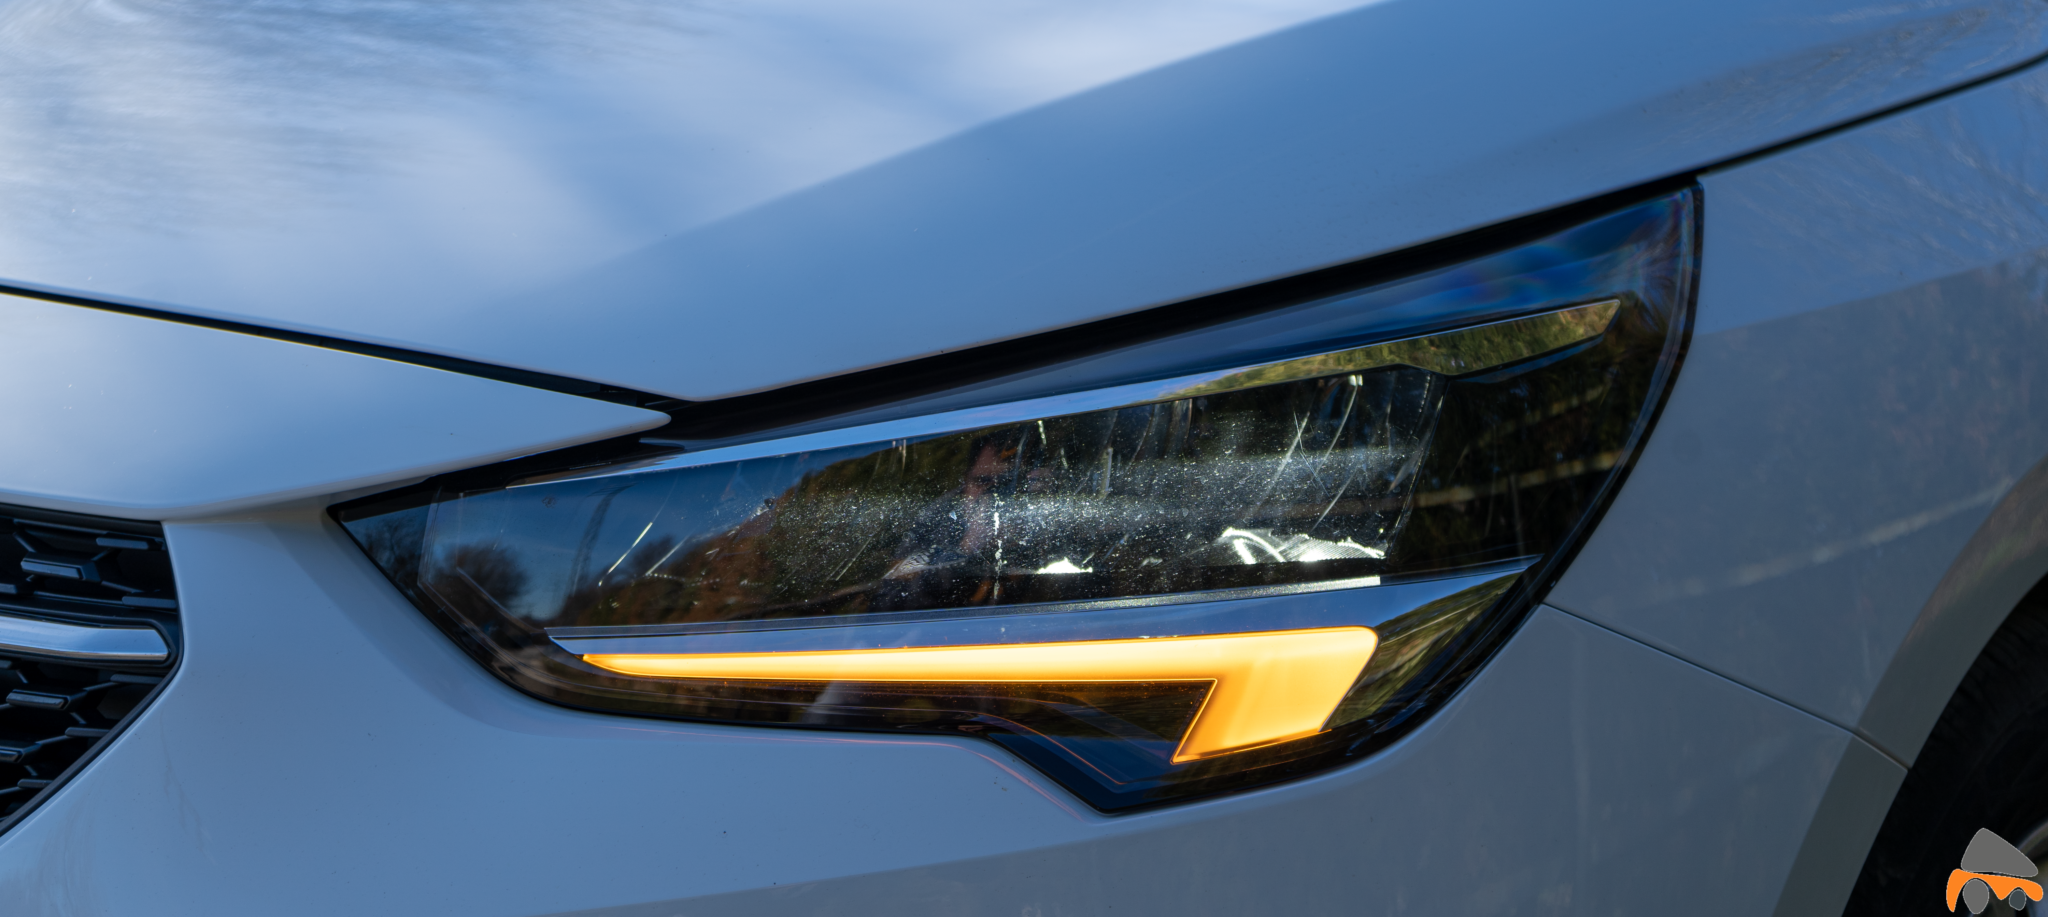 Faro Opel Corsa Edition 2020 - Opel Corsa 2020: Un utilitario para tenerlo muy en cuenta